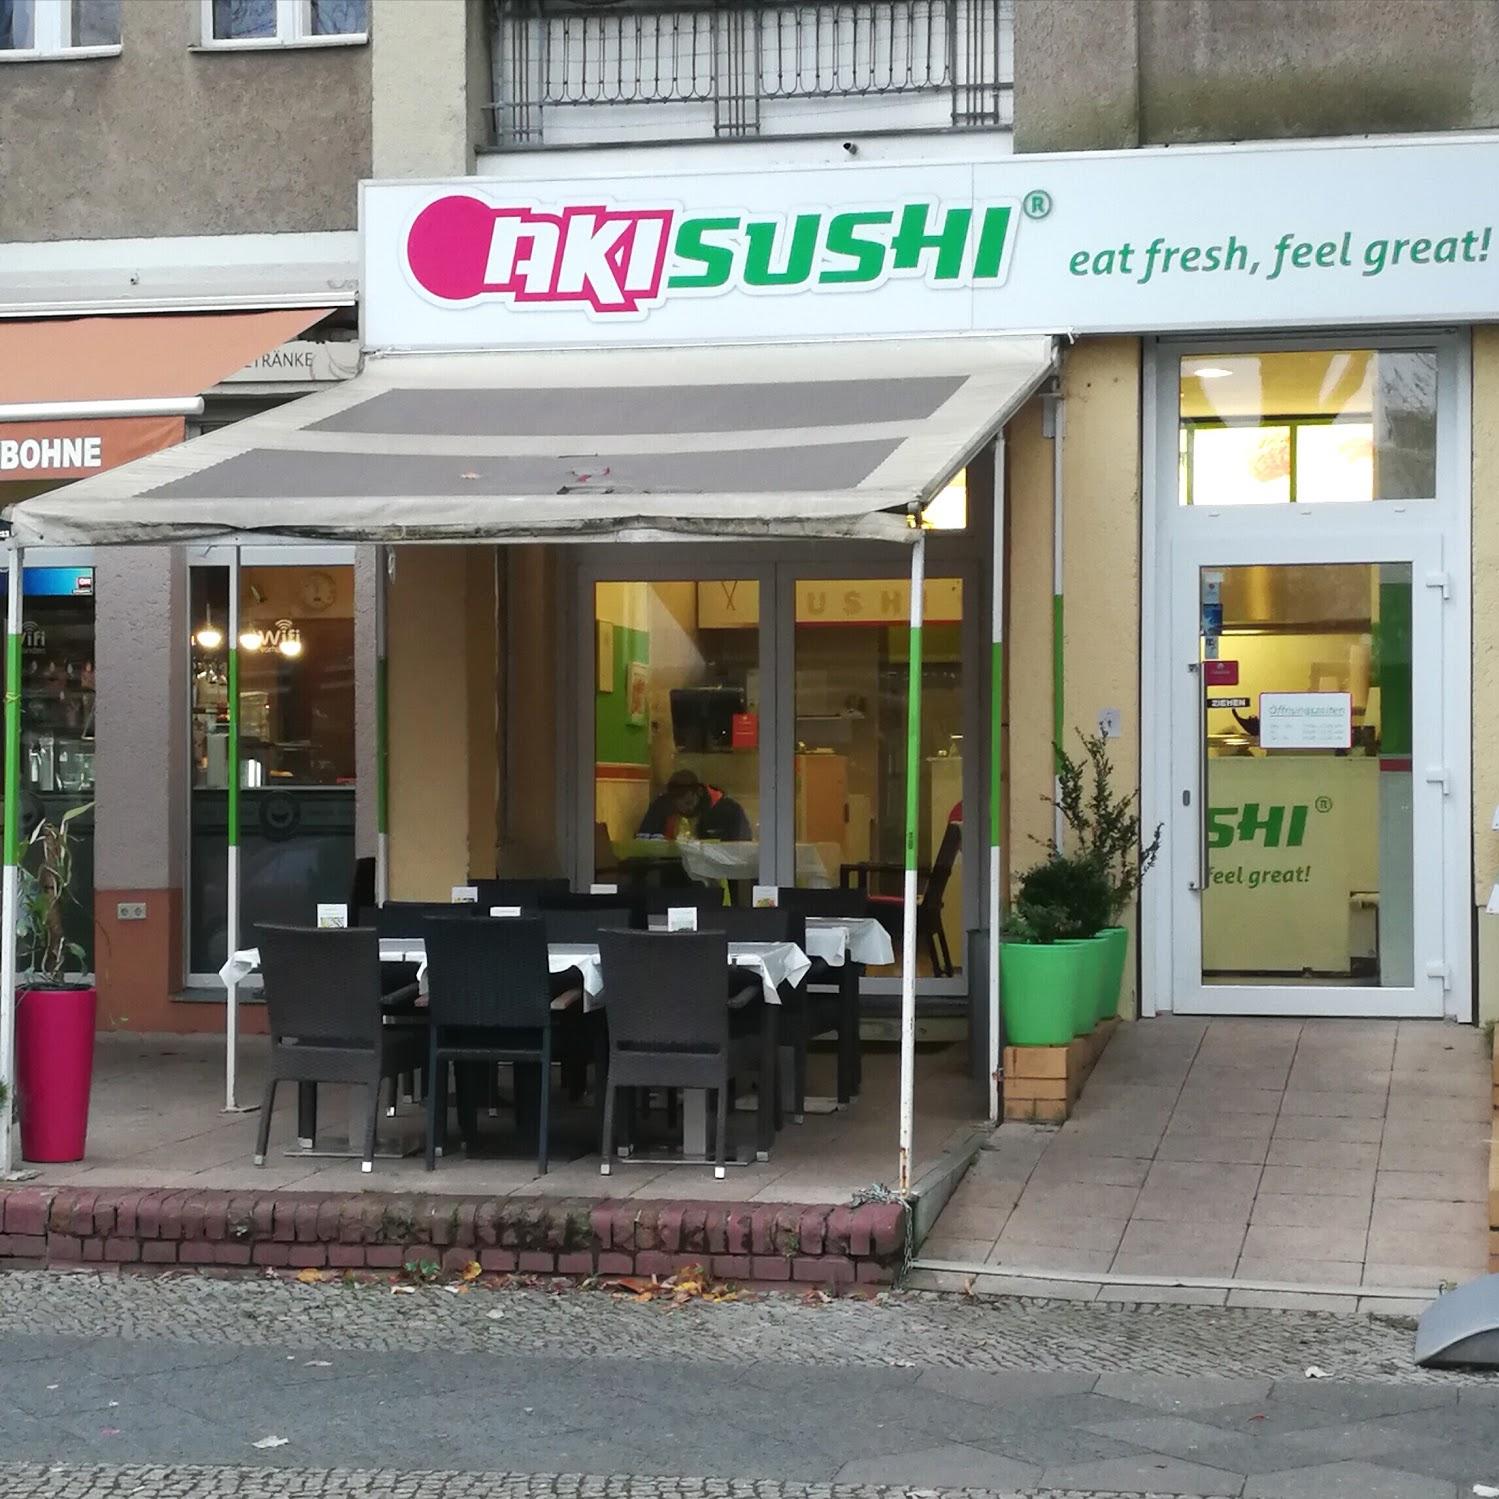 Restaurant "SAKI SUSHI LOVERS" in Berlin